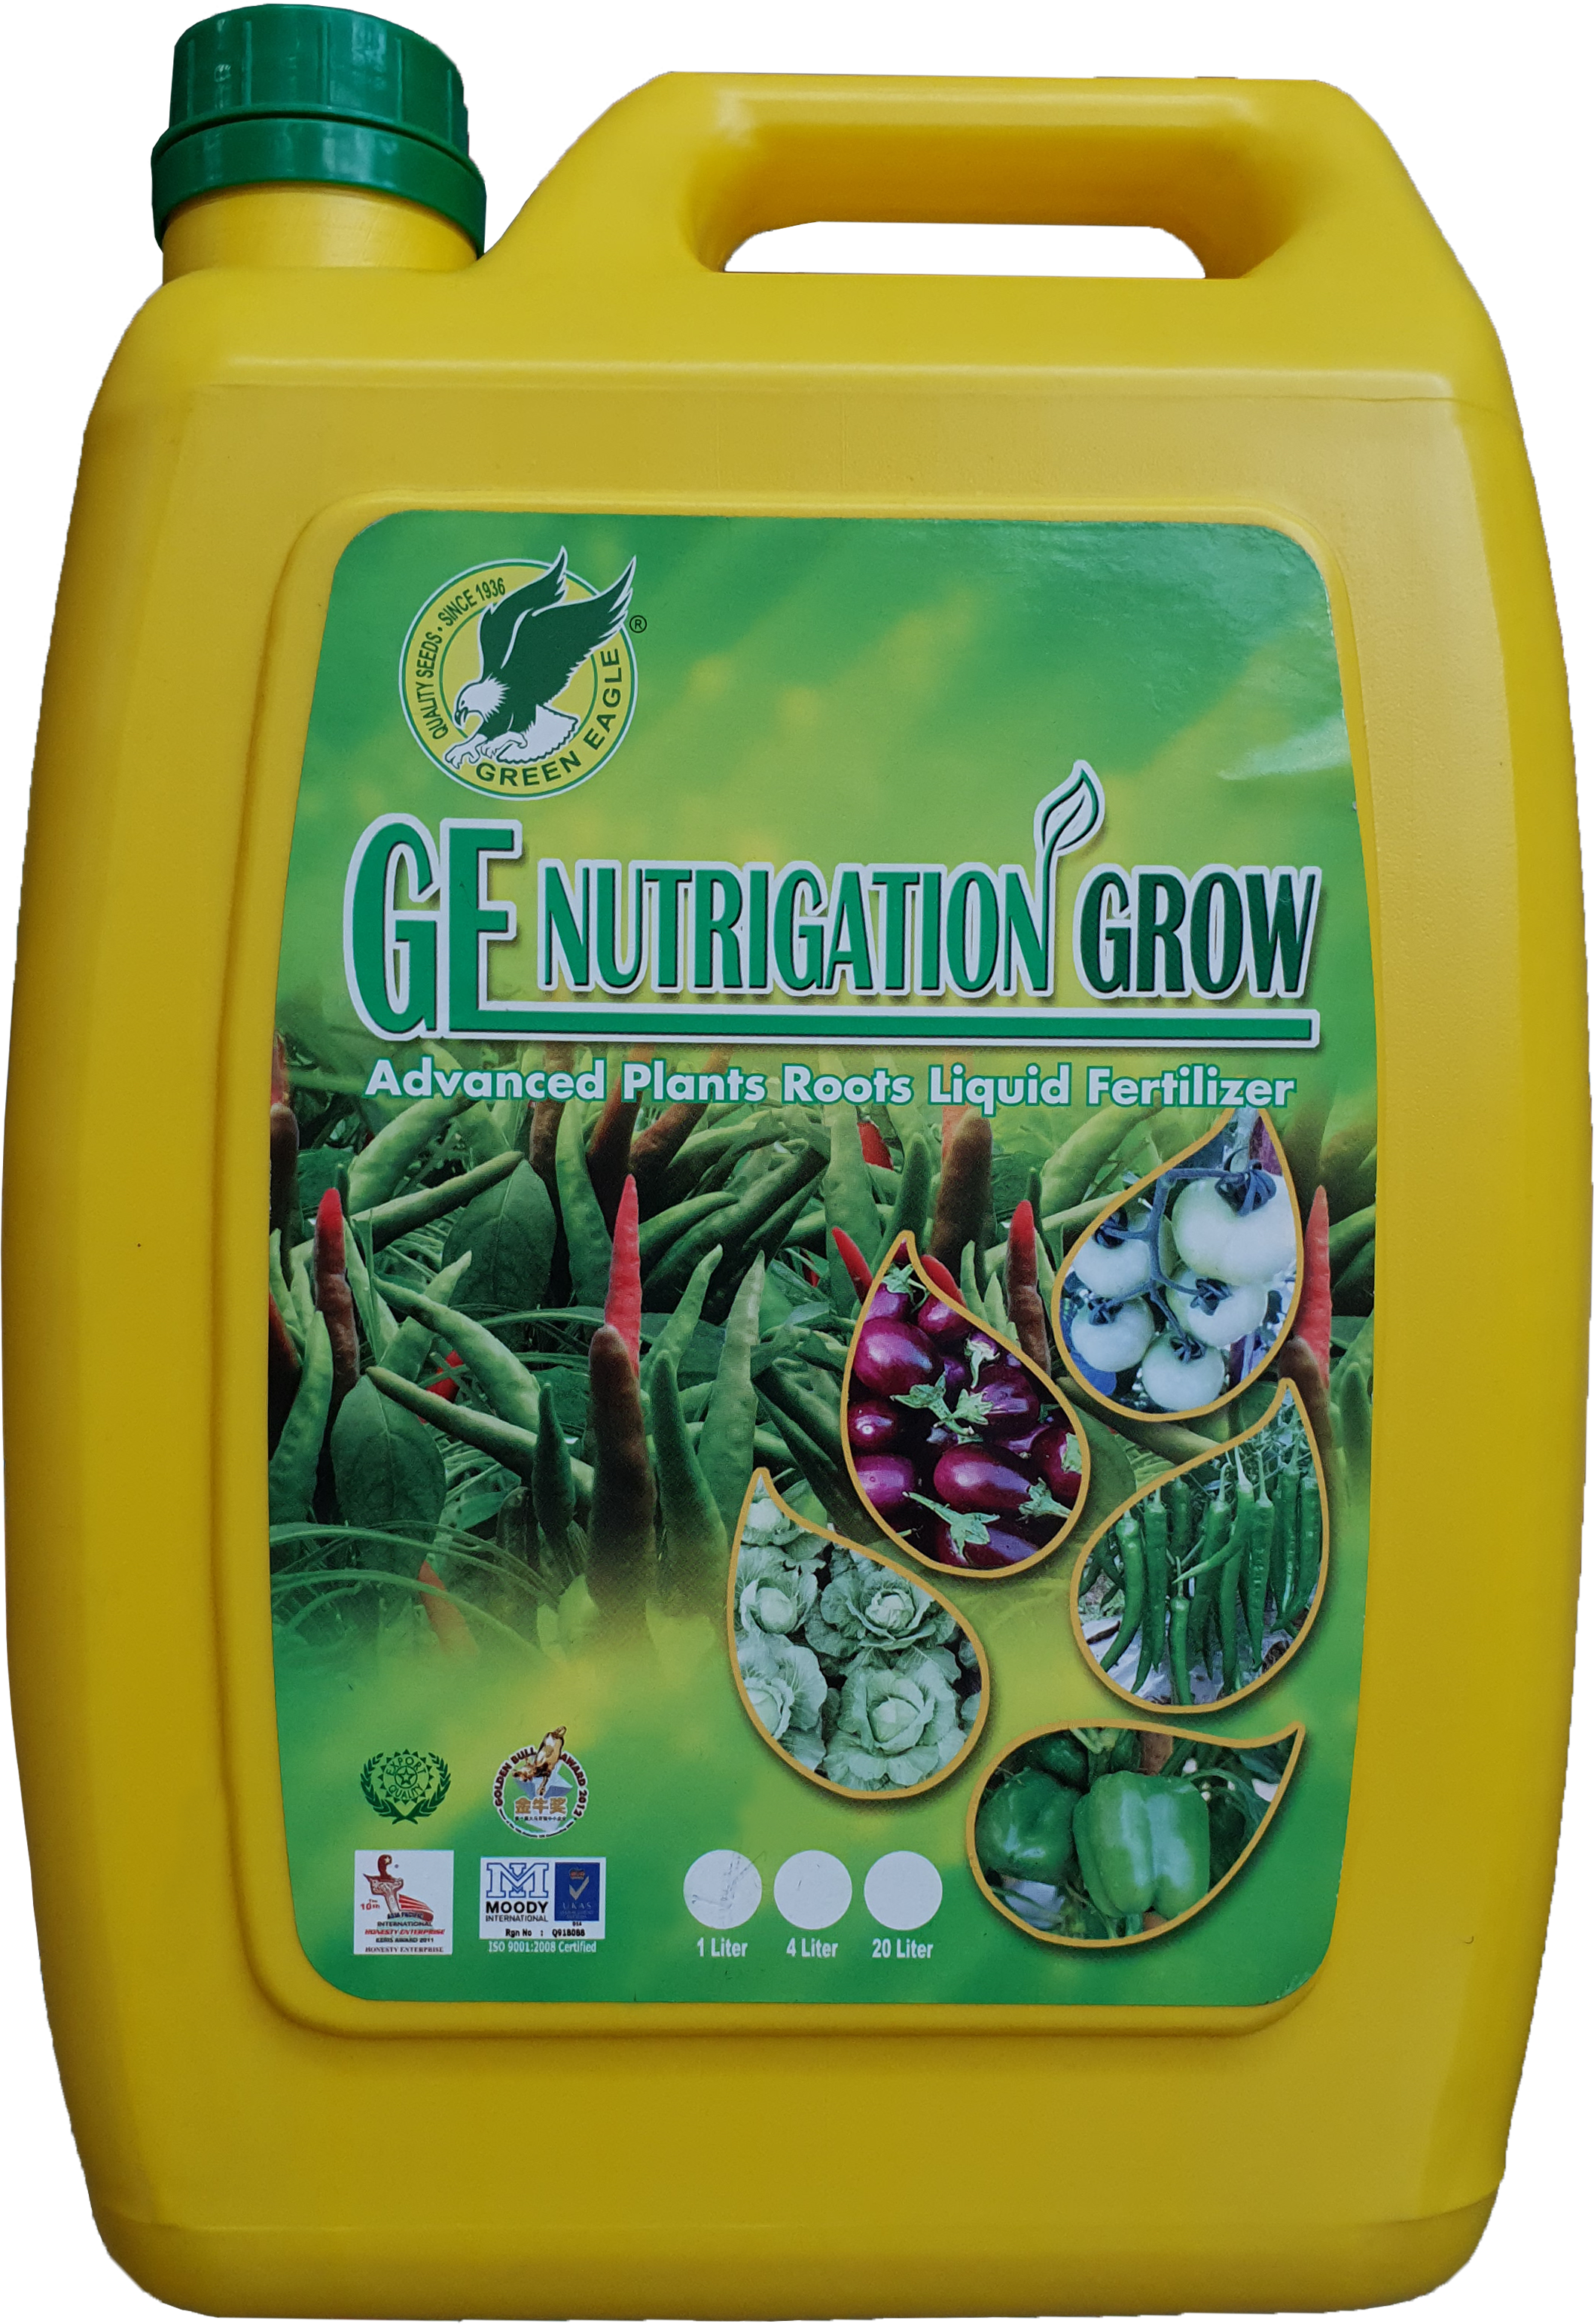 GE Nutrigation Grow 4L bottle (edited)